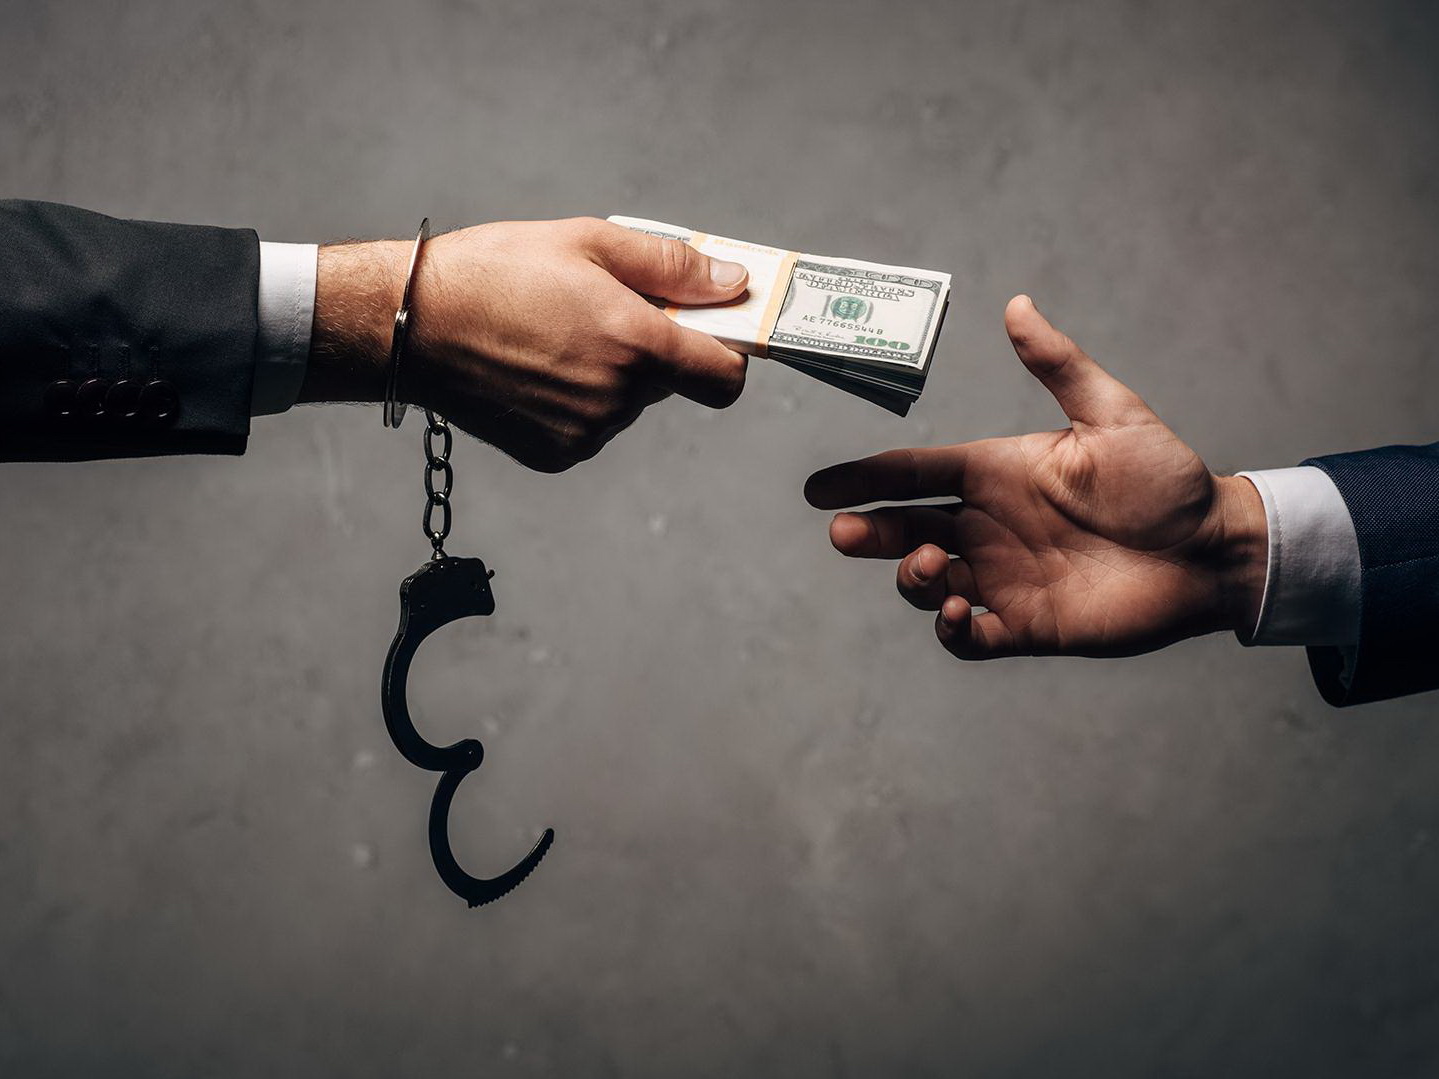 В 2019 году коррупционные преступления в Азербайджане нанесли ущерб на сумму 83 миллиона манатов